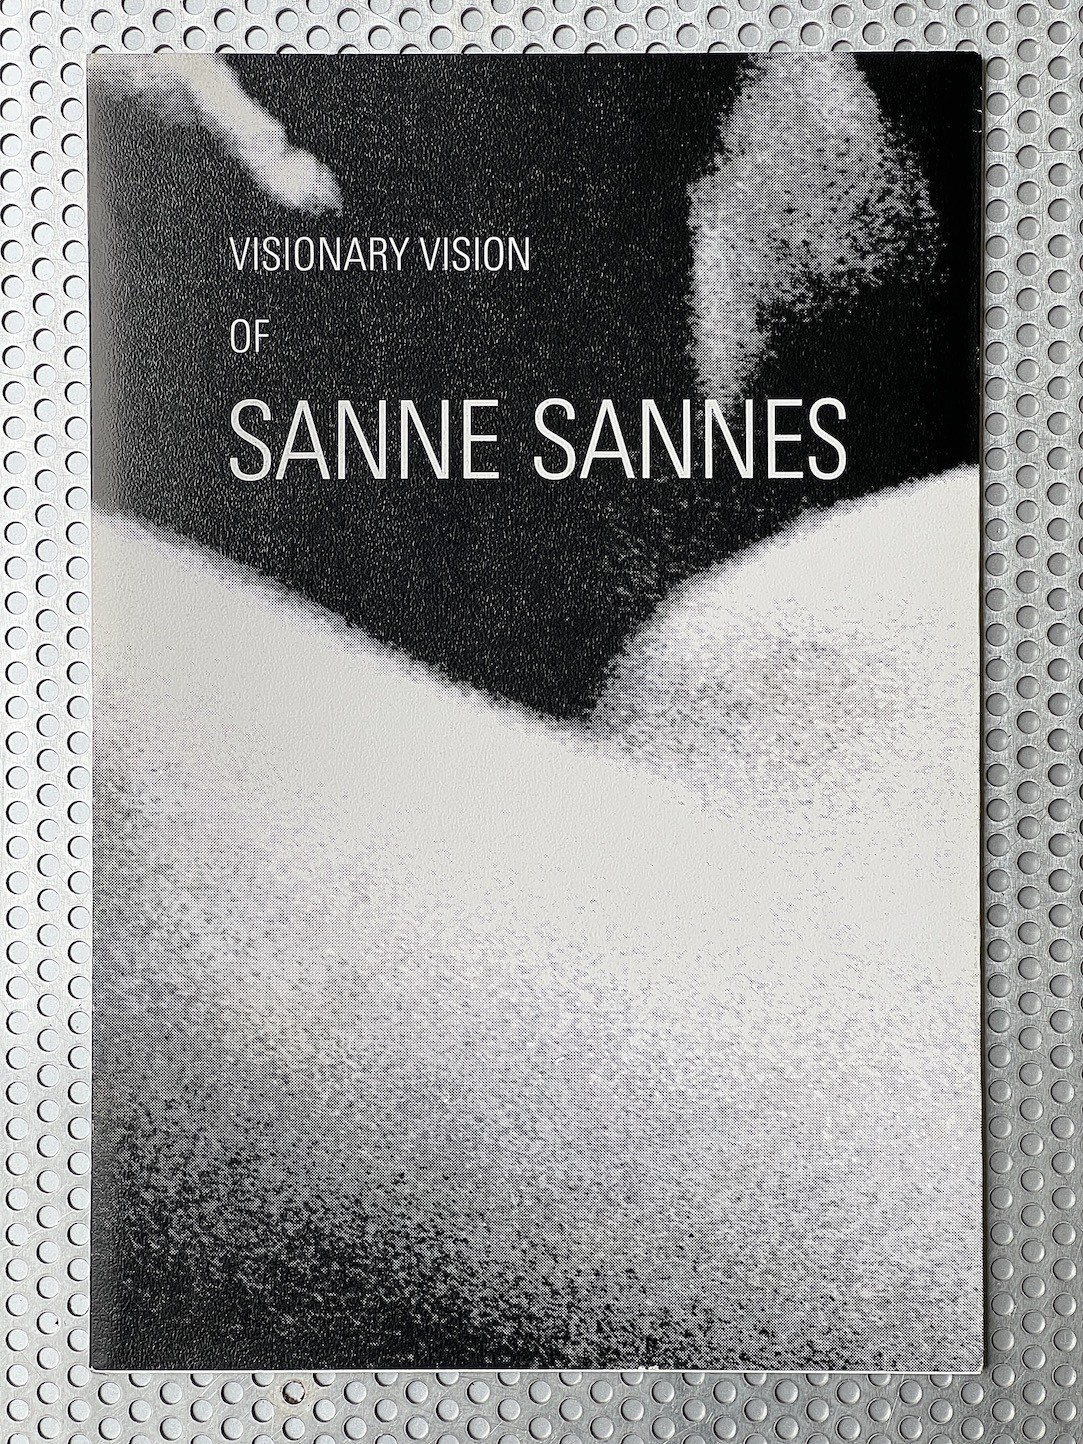 visionary-vision-of-sanne-sannes-kahmann-gallery-9784990525422